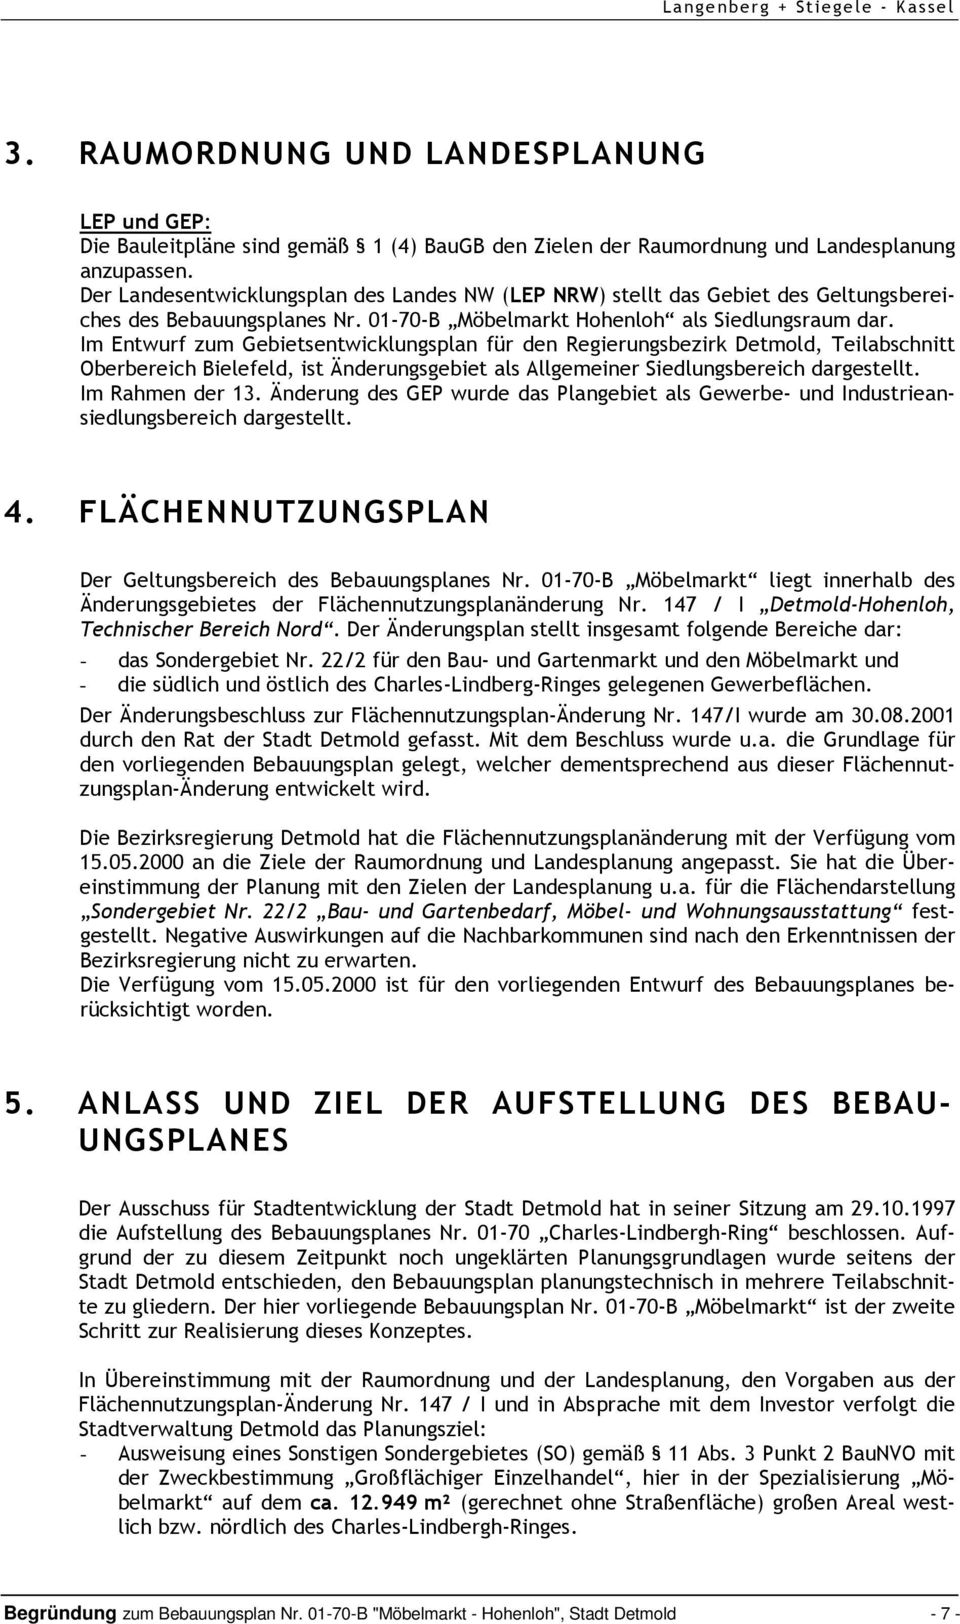 Im Entwurf zum Gebietsentwicklungsplan für den Regierungsbezirk Detmold, Teilabschnitt Oberbereich Bielefeld, ist Änderungsgebiet als Allgemeiner Siedlungsbereich dargestellt. Im Rahmen der 13.